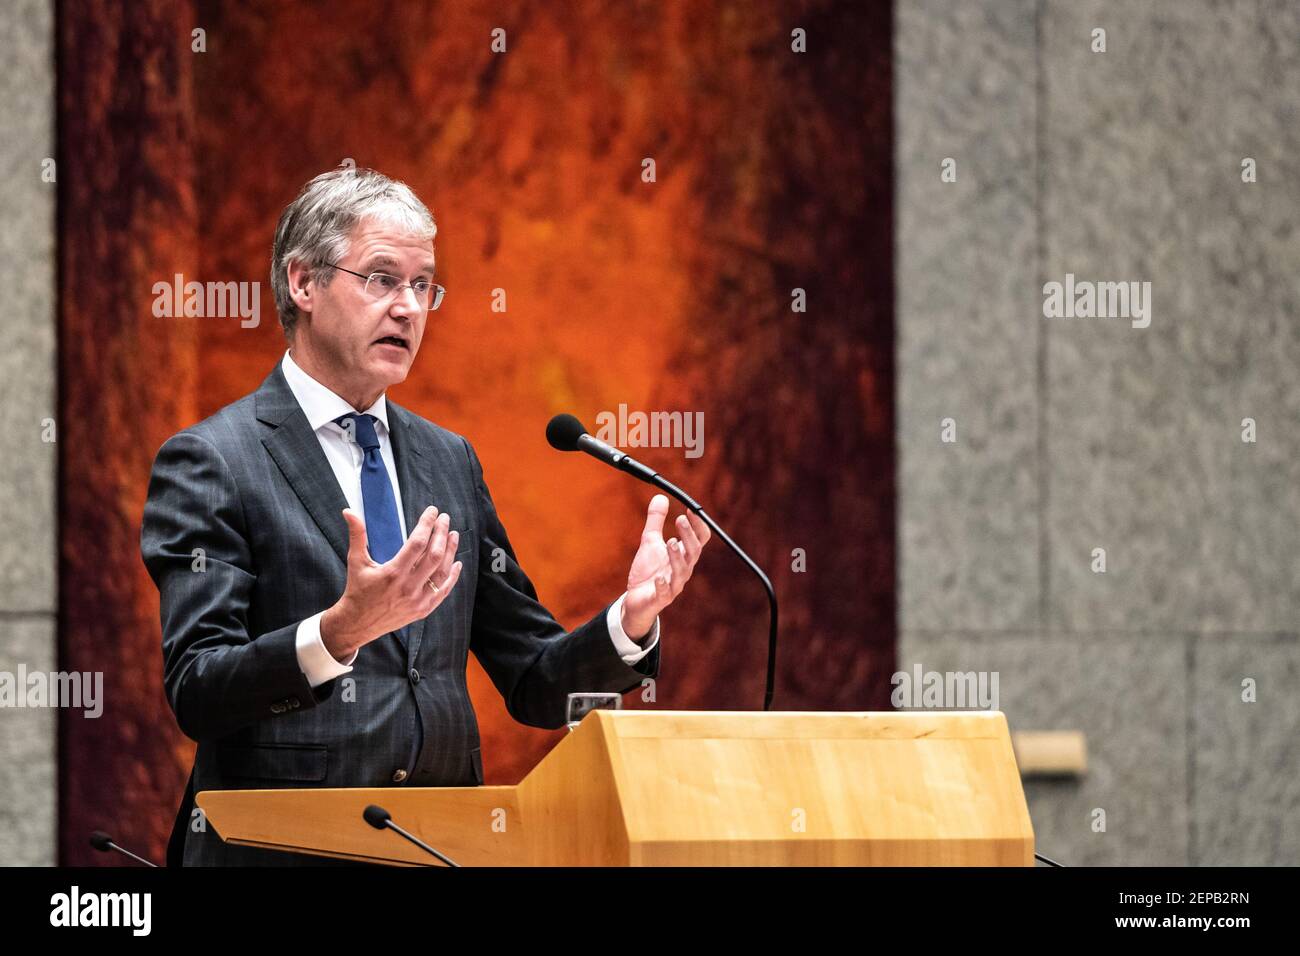 DEN HAAG, 26-11-2019, Question Hour in the Dutch parliament. Minister voor Basis en Voortgezet Onderwijs en Media Arie Slob (Photo by Pro Shots/Sipa USA) Stock Photo